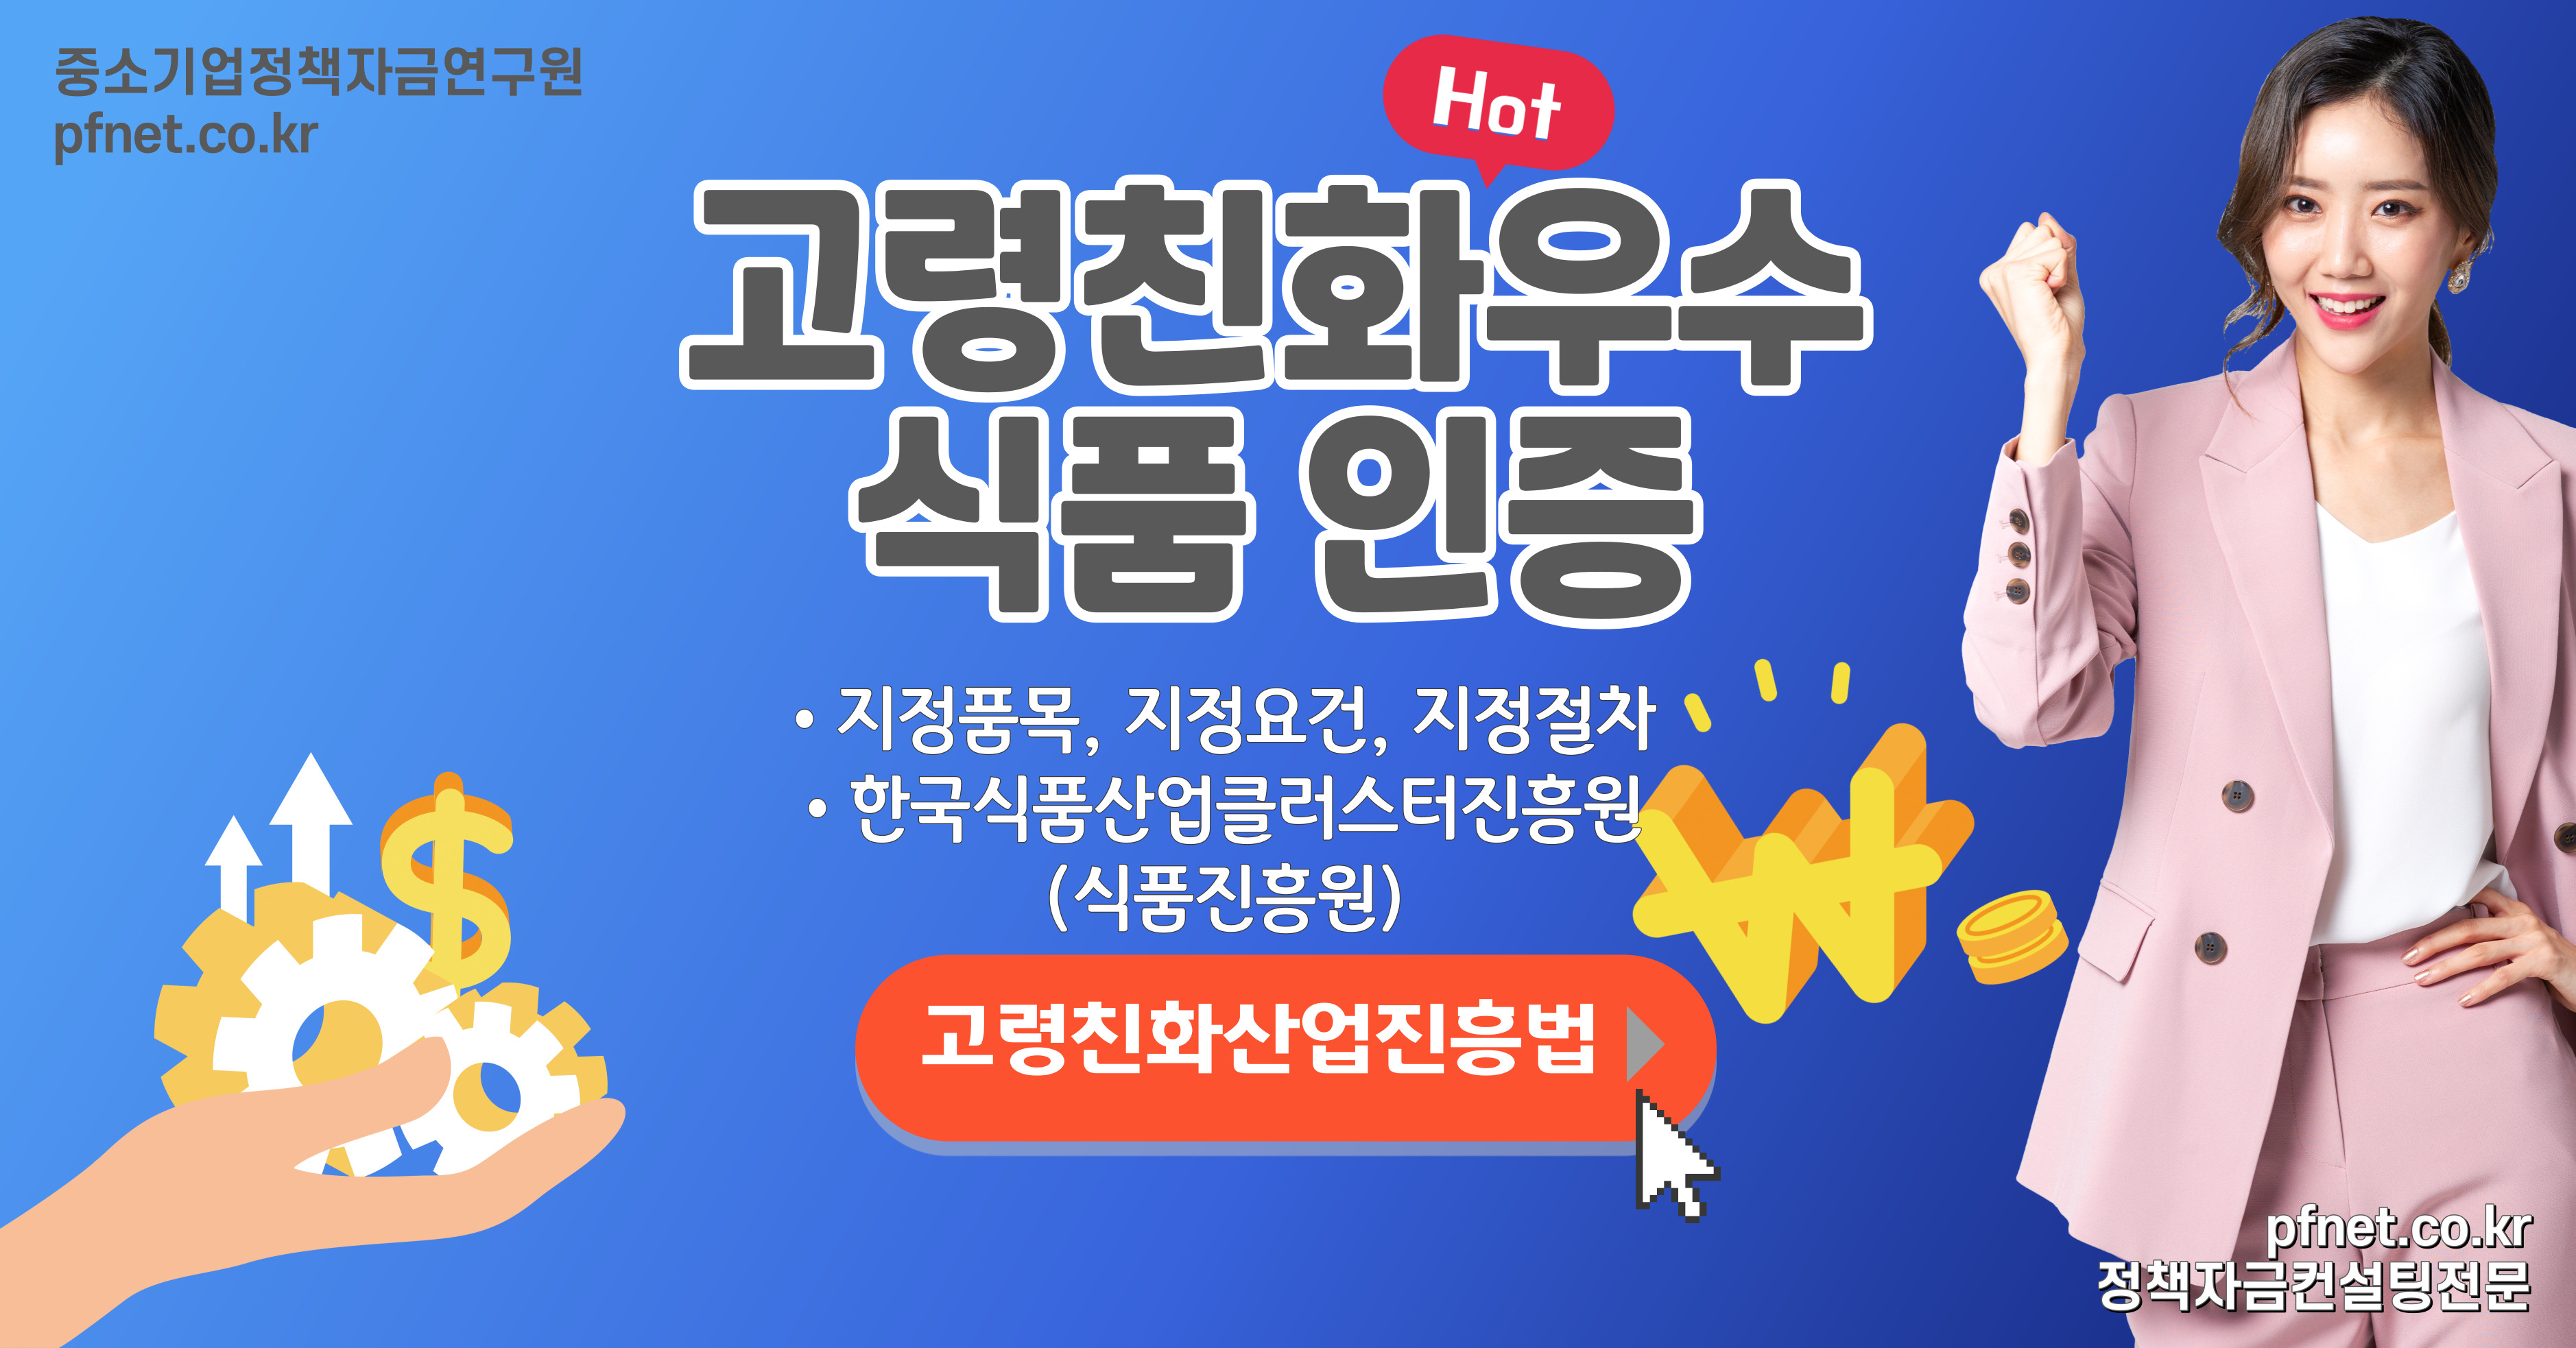 한국식품산업클러스터진흥원의 노령 인구를 위한 고령친화우수식품 지정 방법